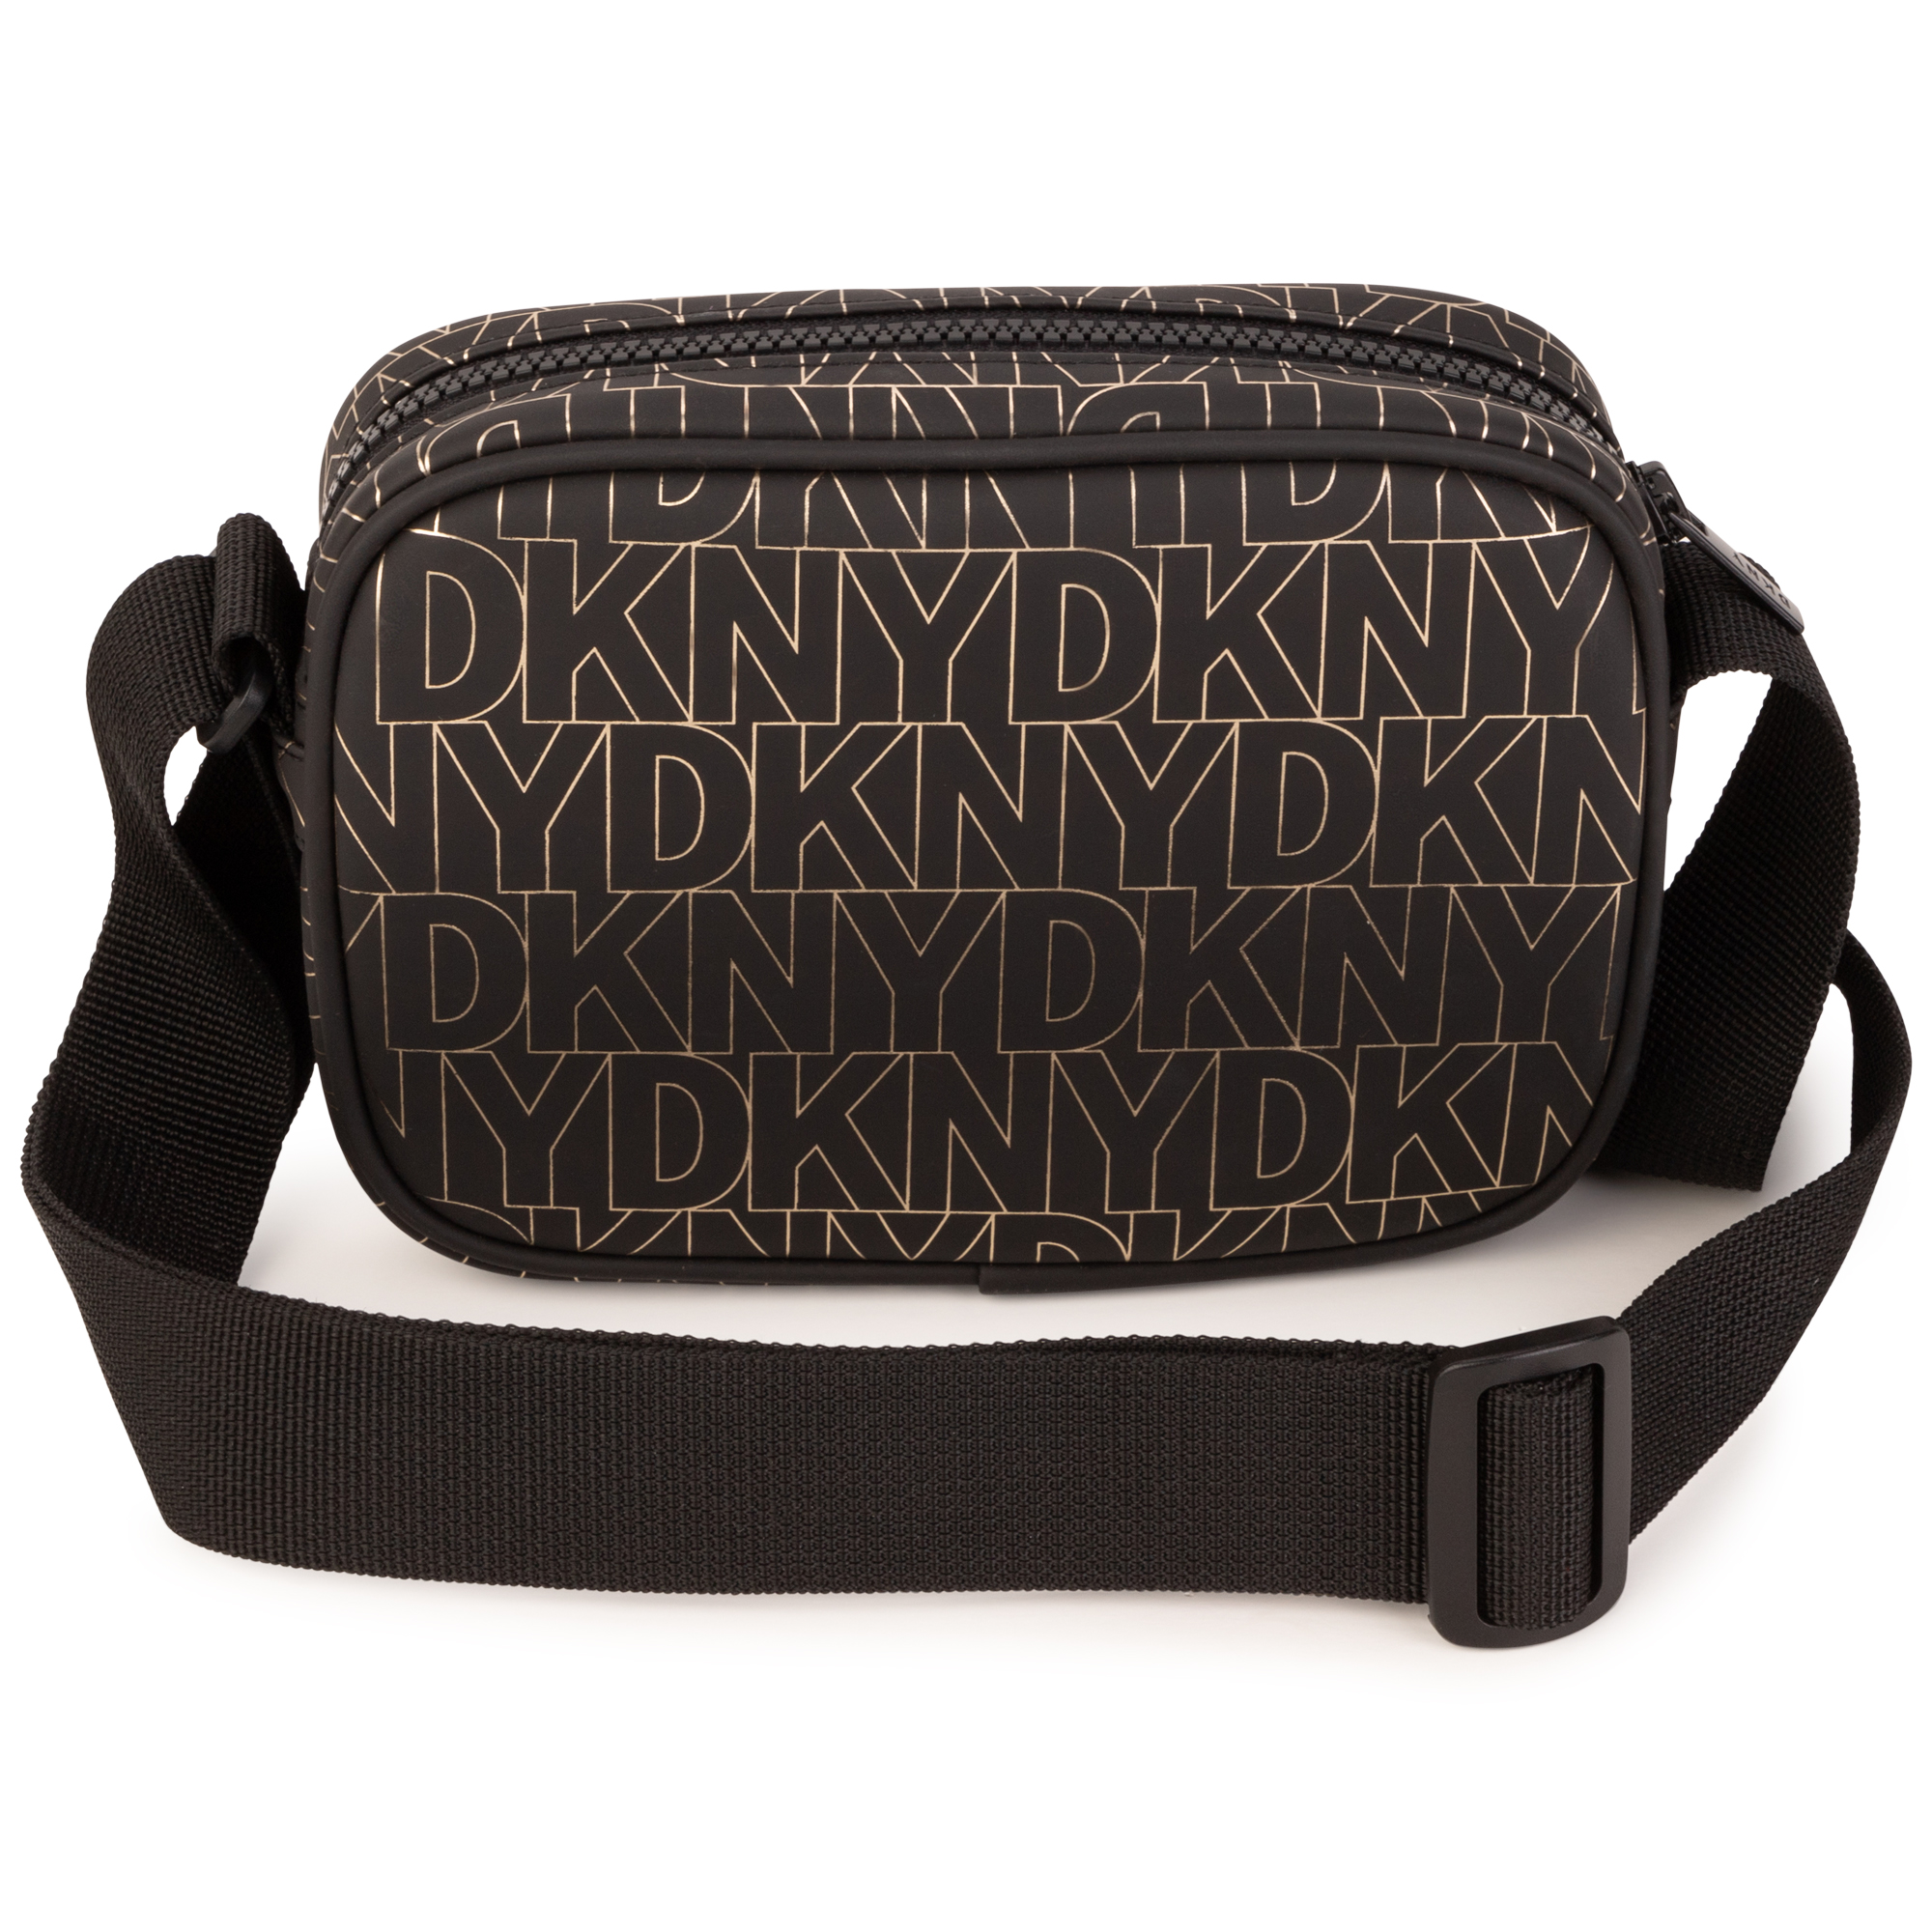 Printed handbag DKNY for GIRL